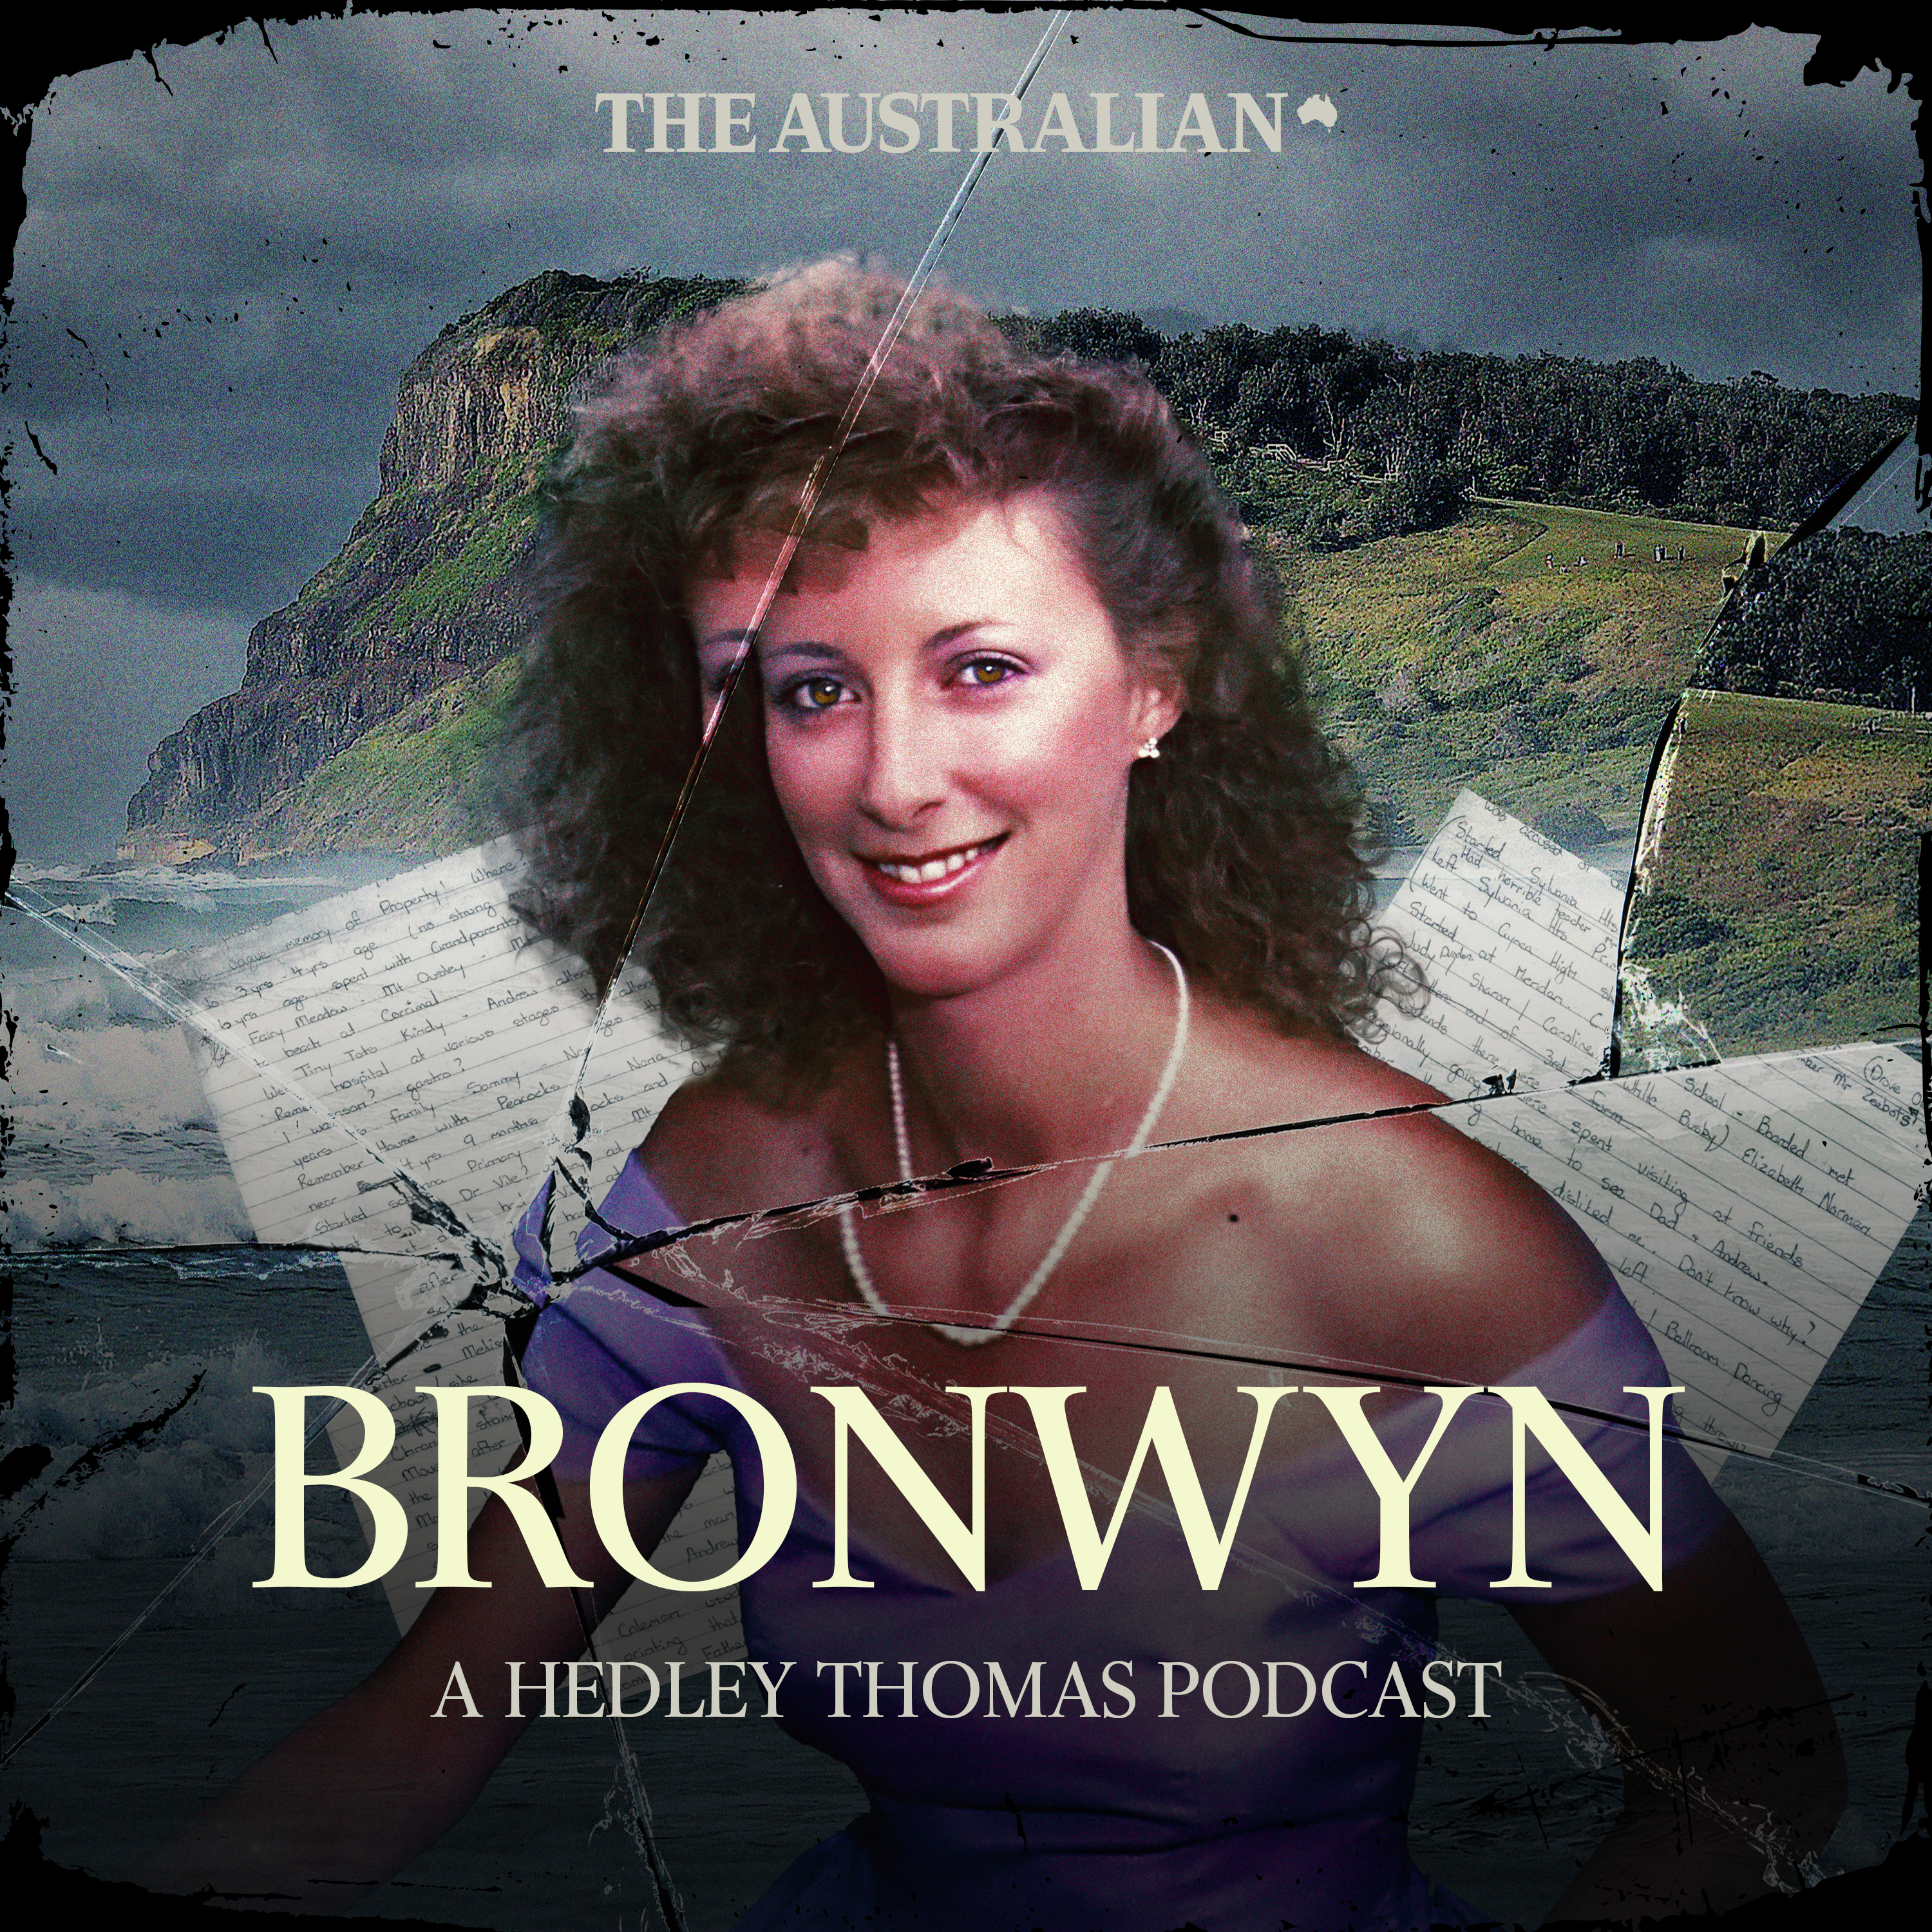 Listen to episode 1 of BRONWYN